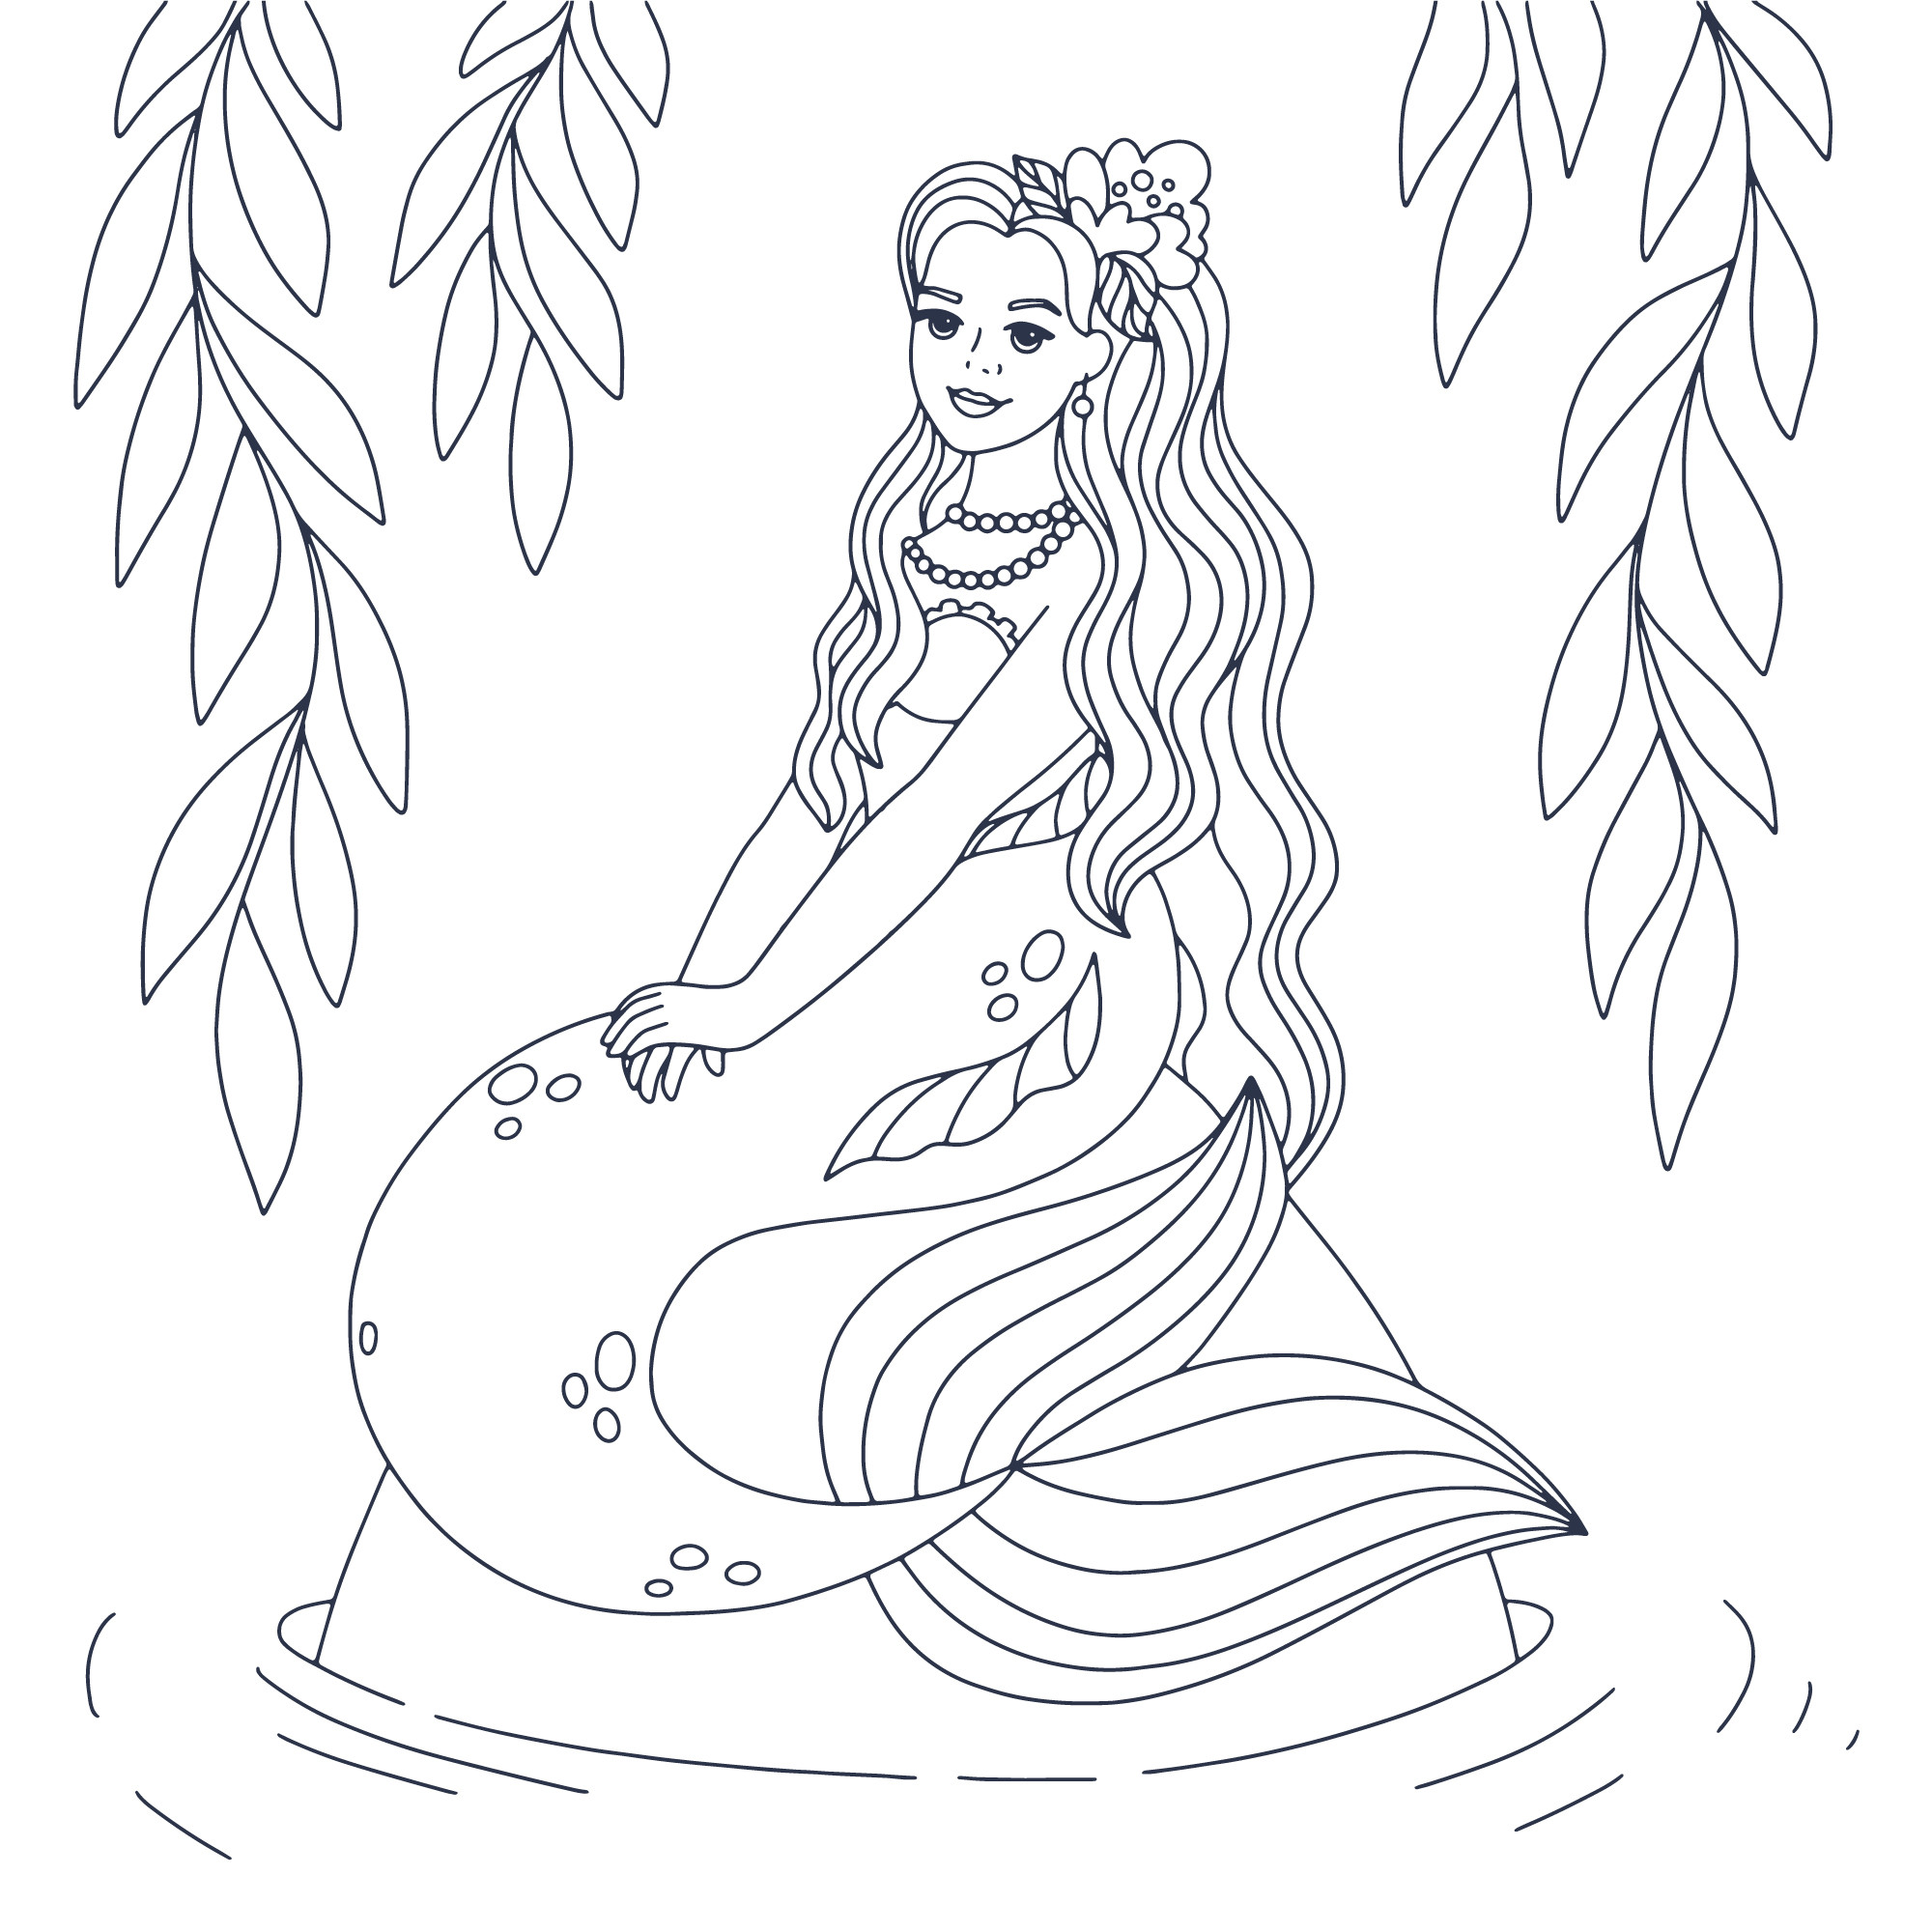 Раскраска для детей: русалка на камне с длинными волосами и ожерельем на шее